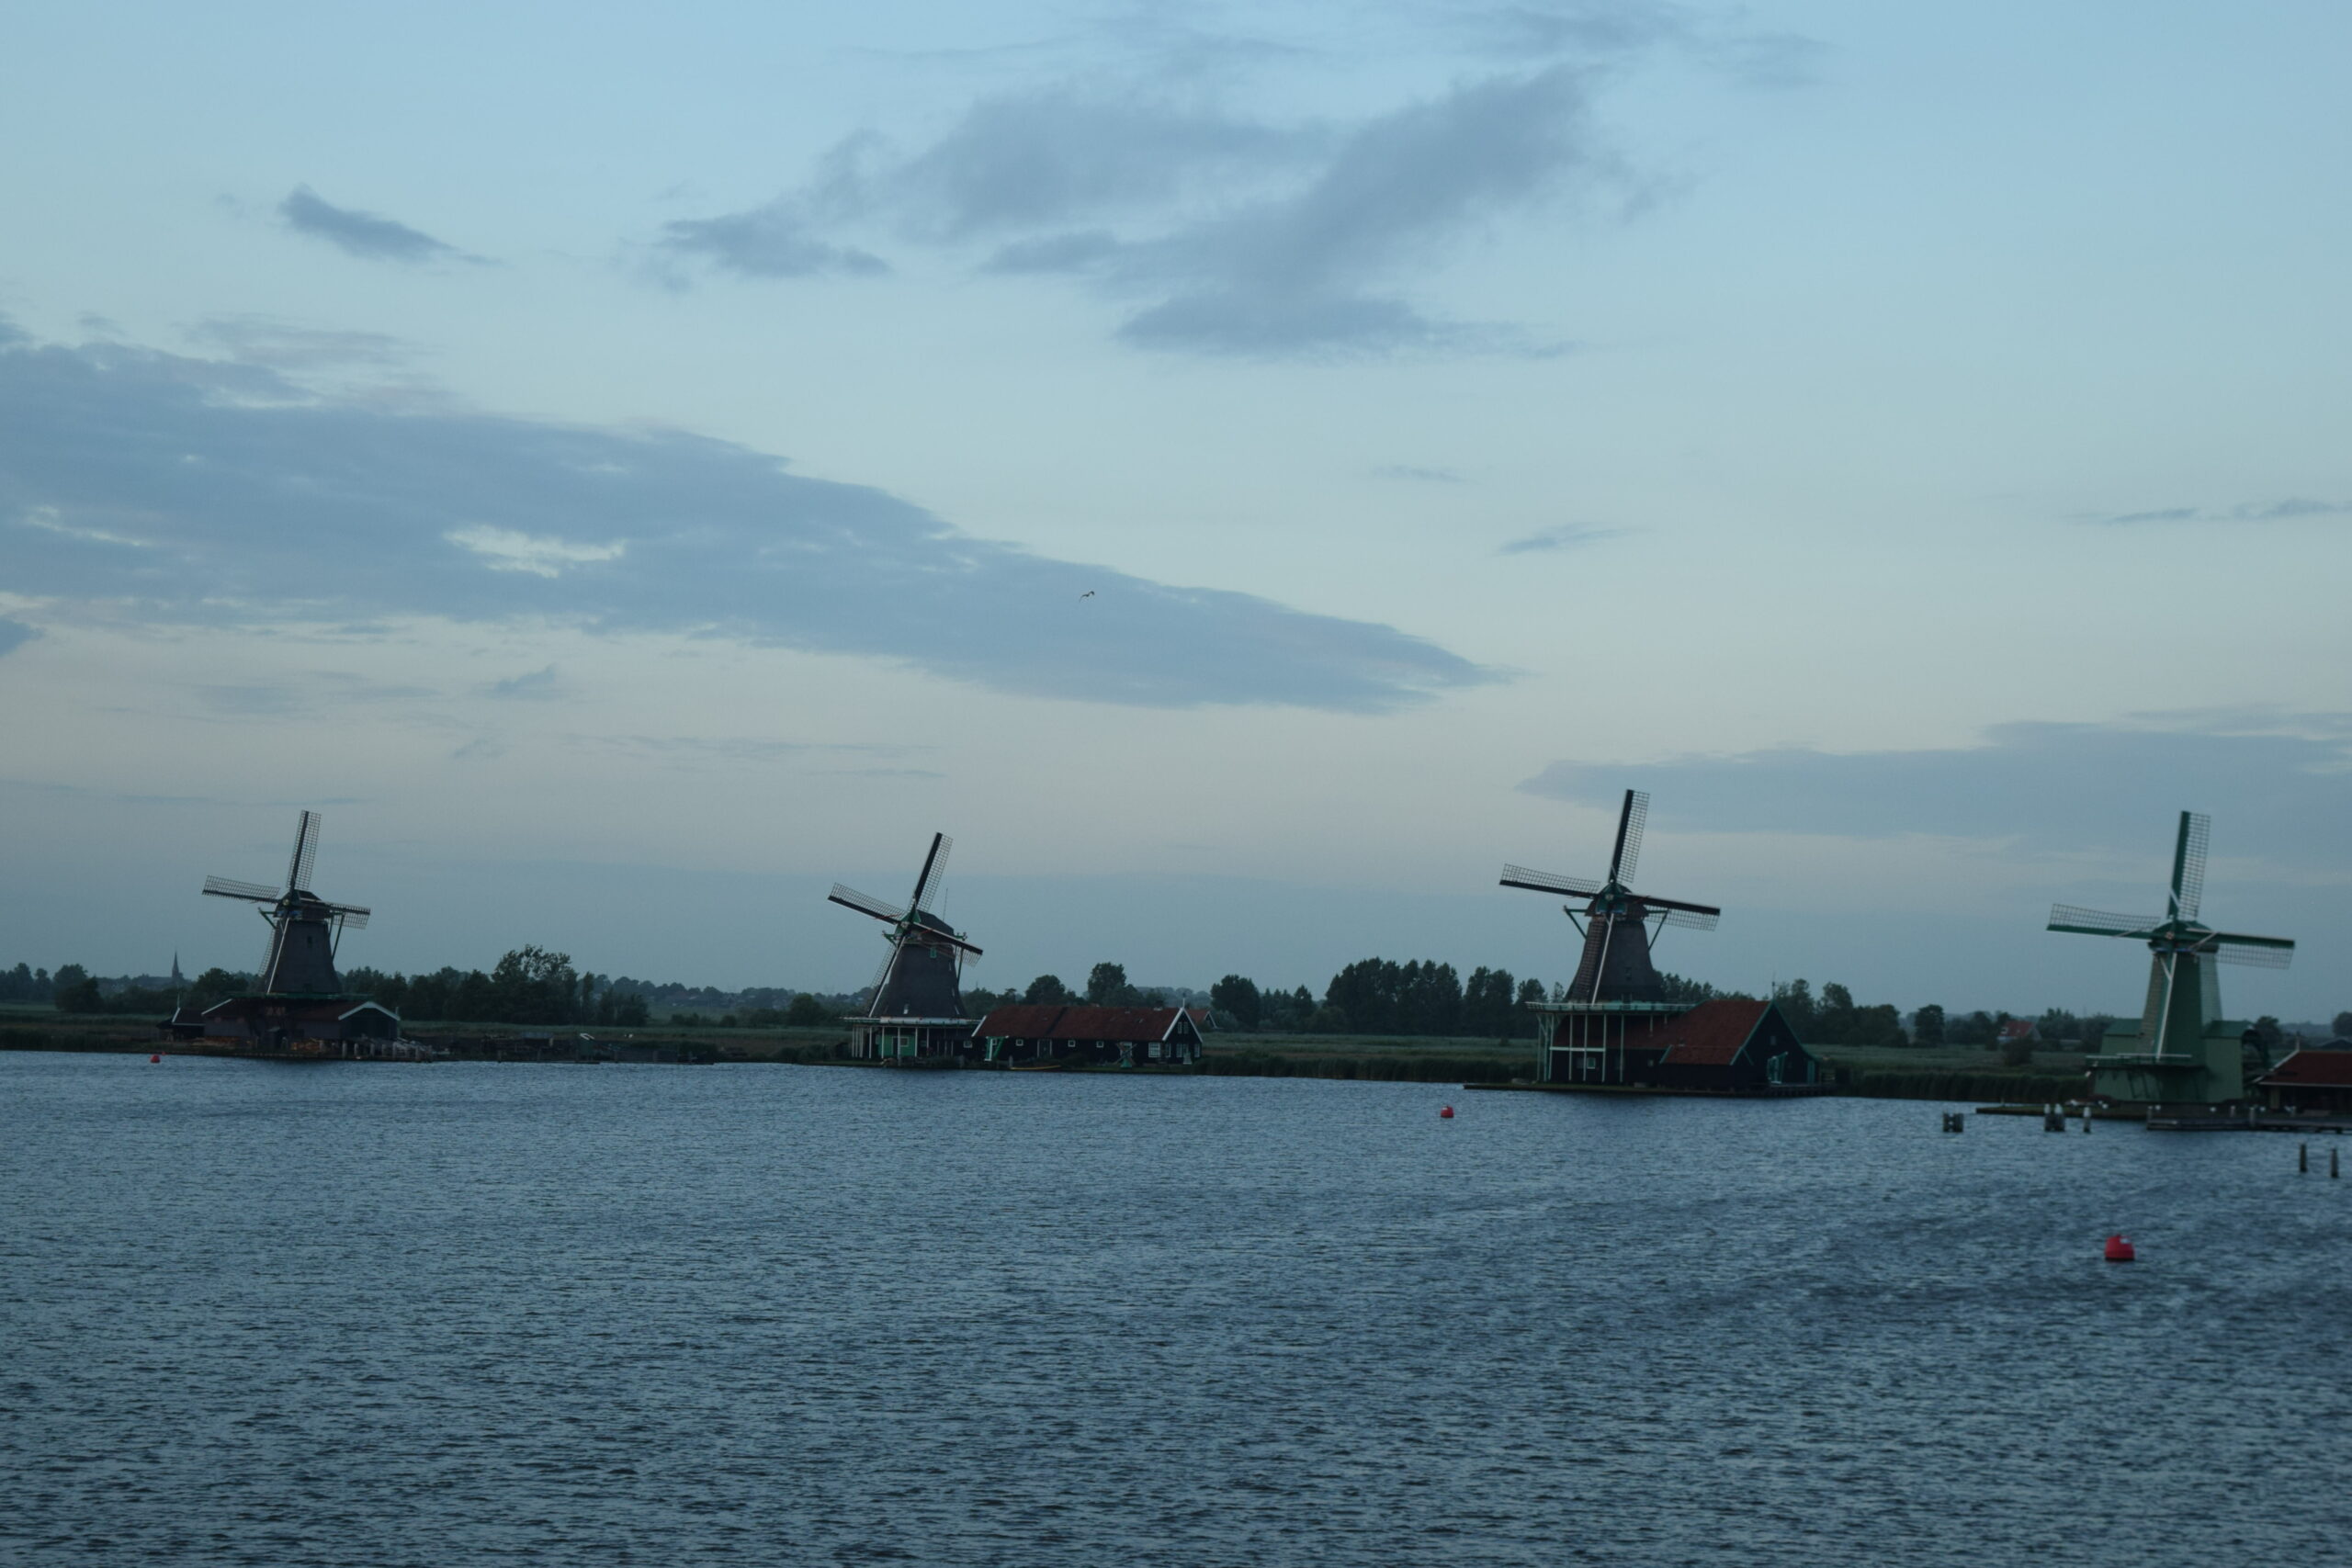 Zaanse Schans: Day trip to the windmills’ village